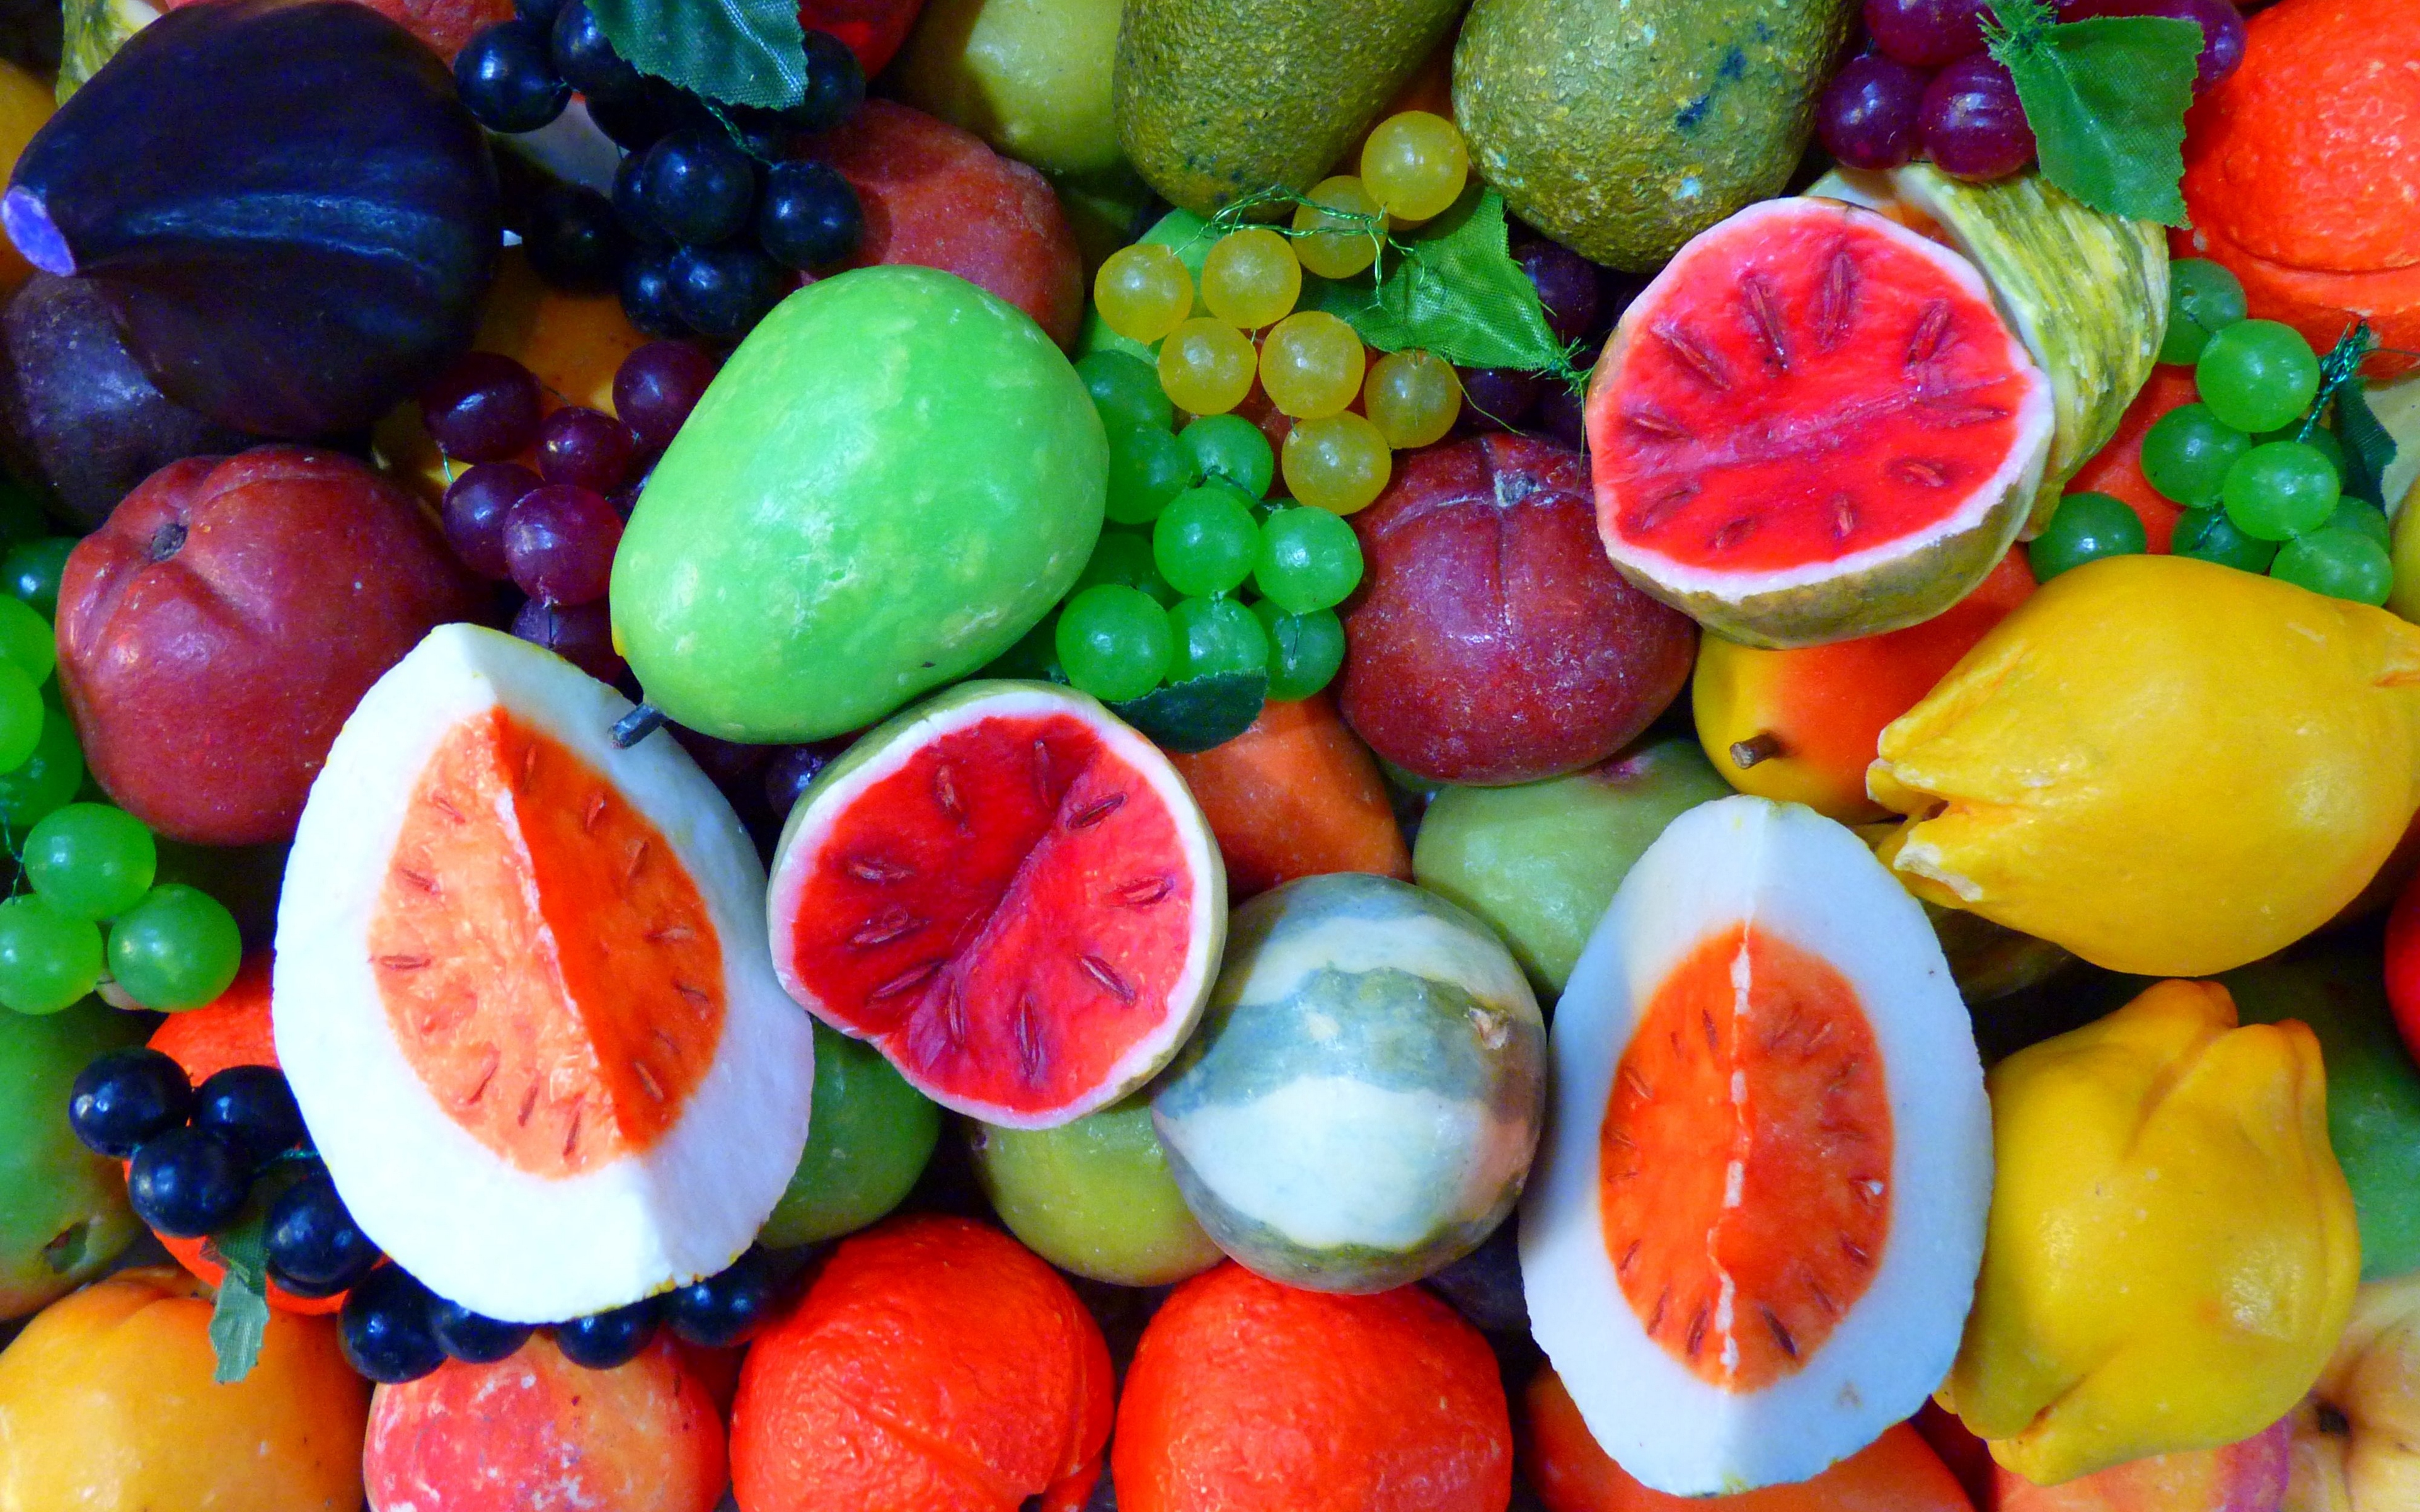 4К обои, фрукты, ягоды, десерт, лимоны, апельсины, тропические продукты,4K wallpapers, fruits, berries, dessert, lemons, oranges, tropical products